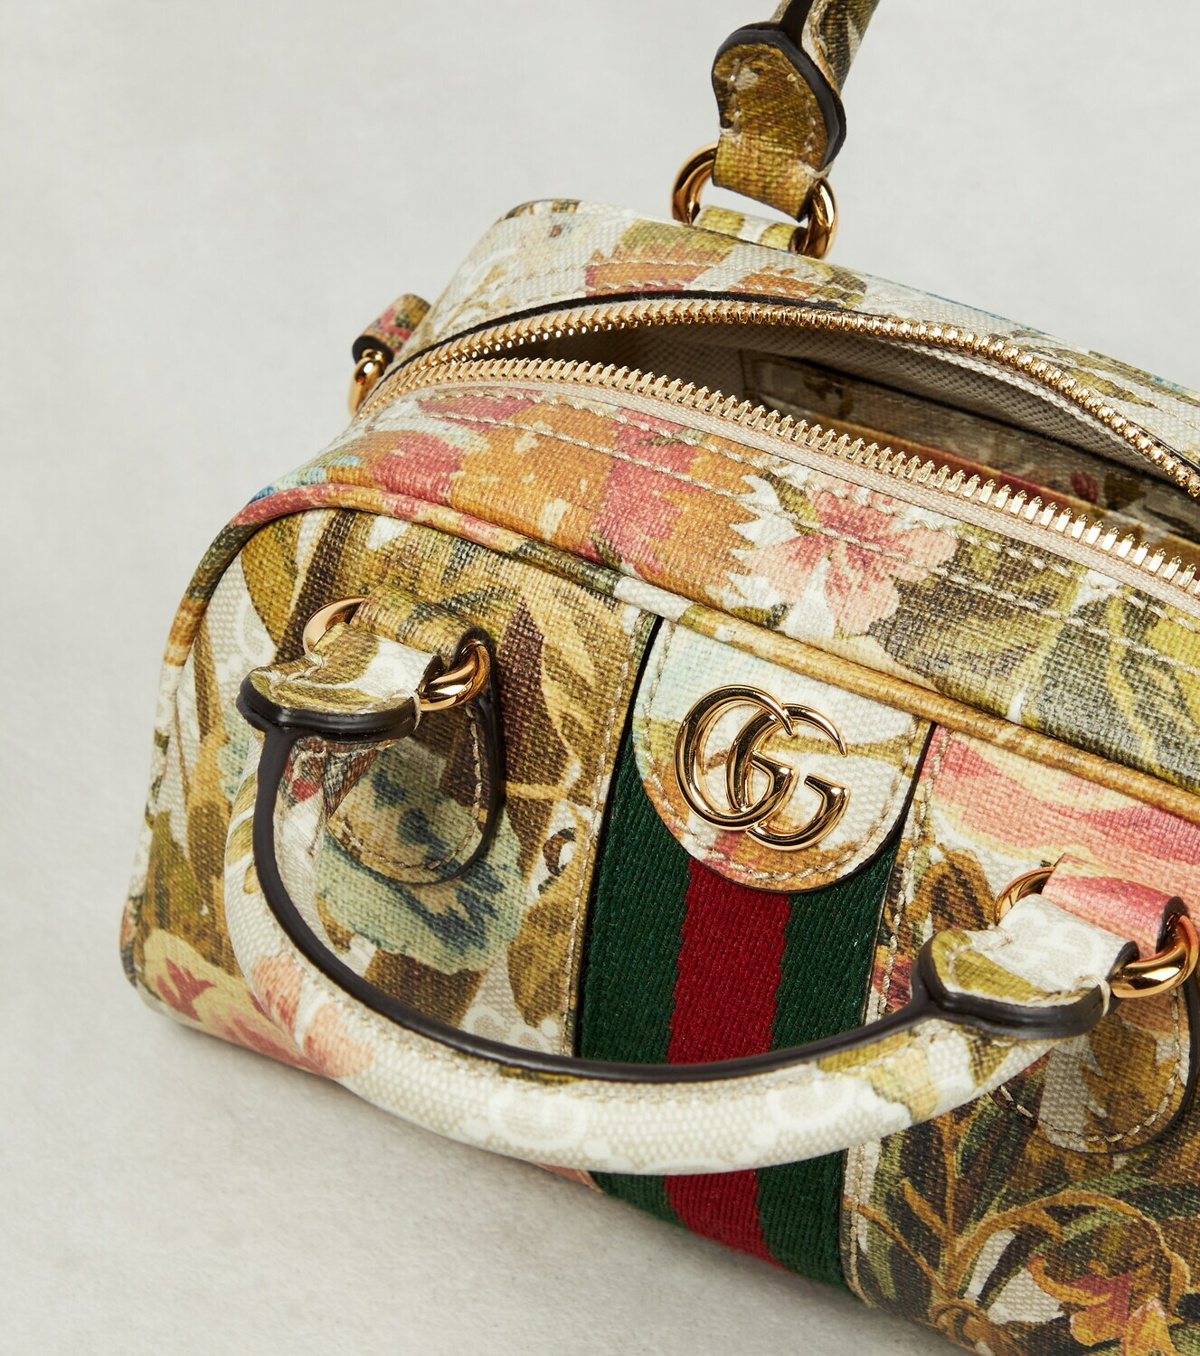 Gucci GG Flora Small Tote Bag